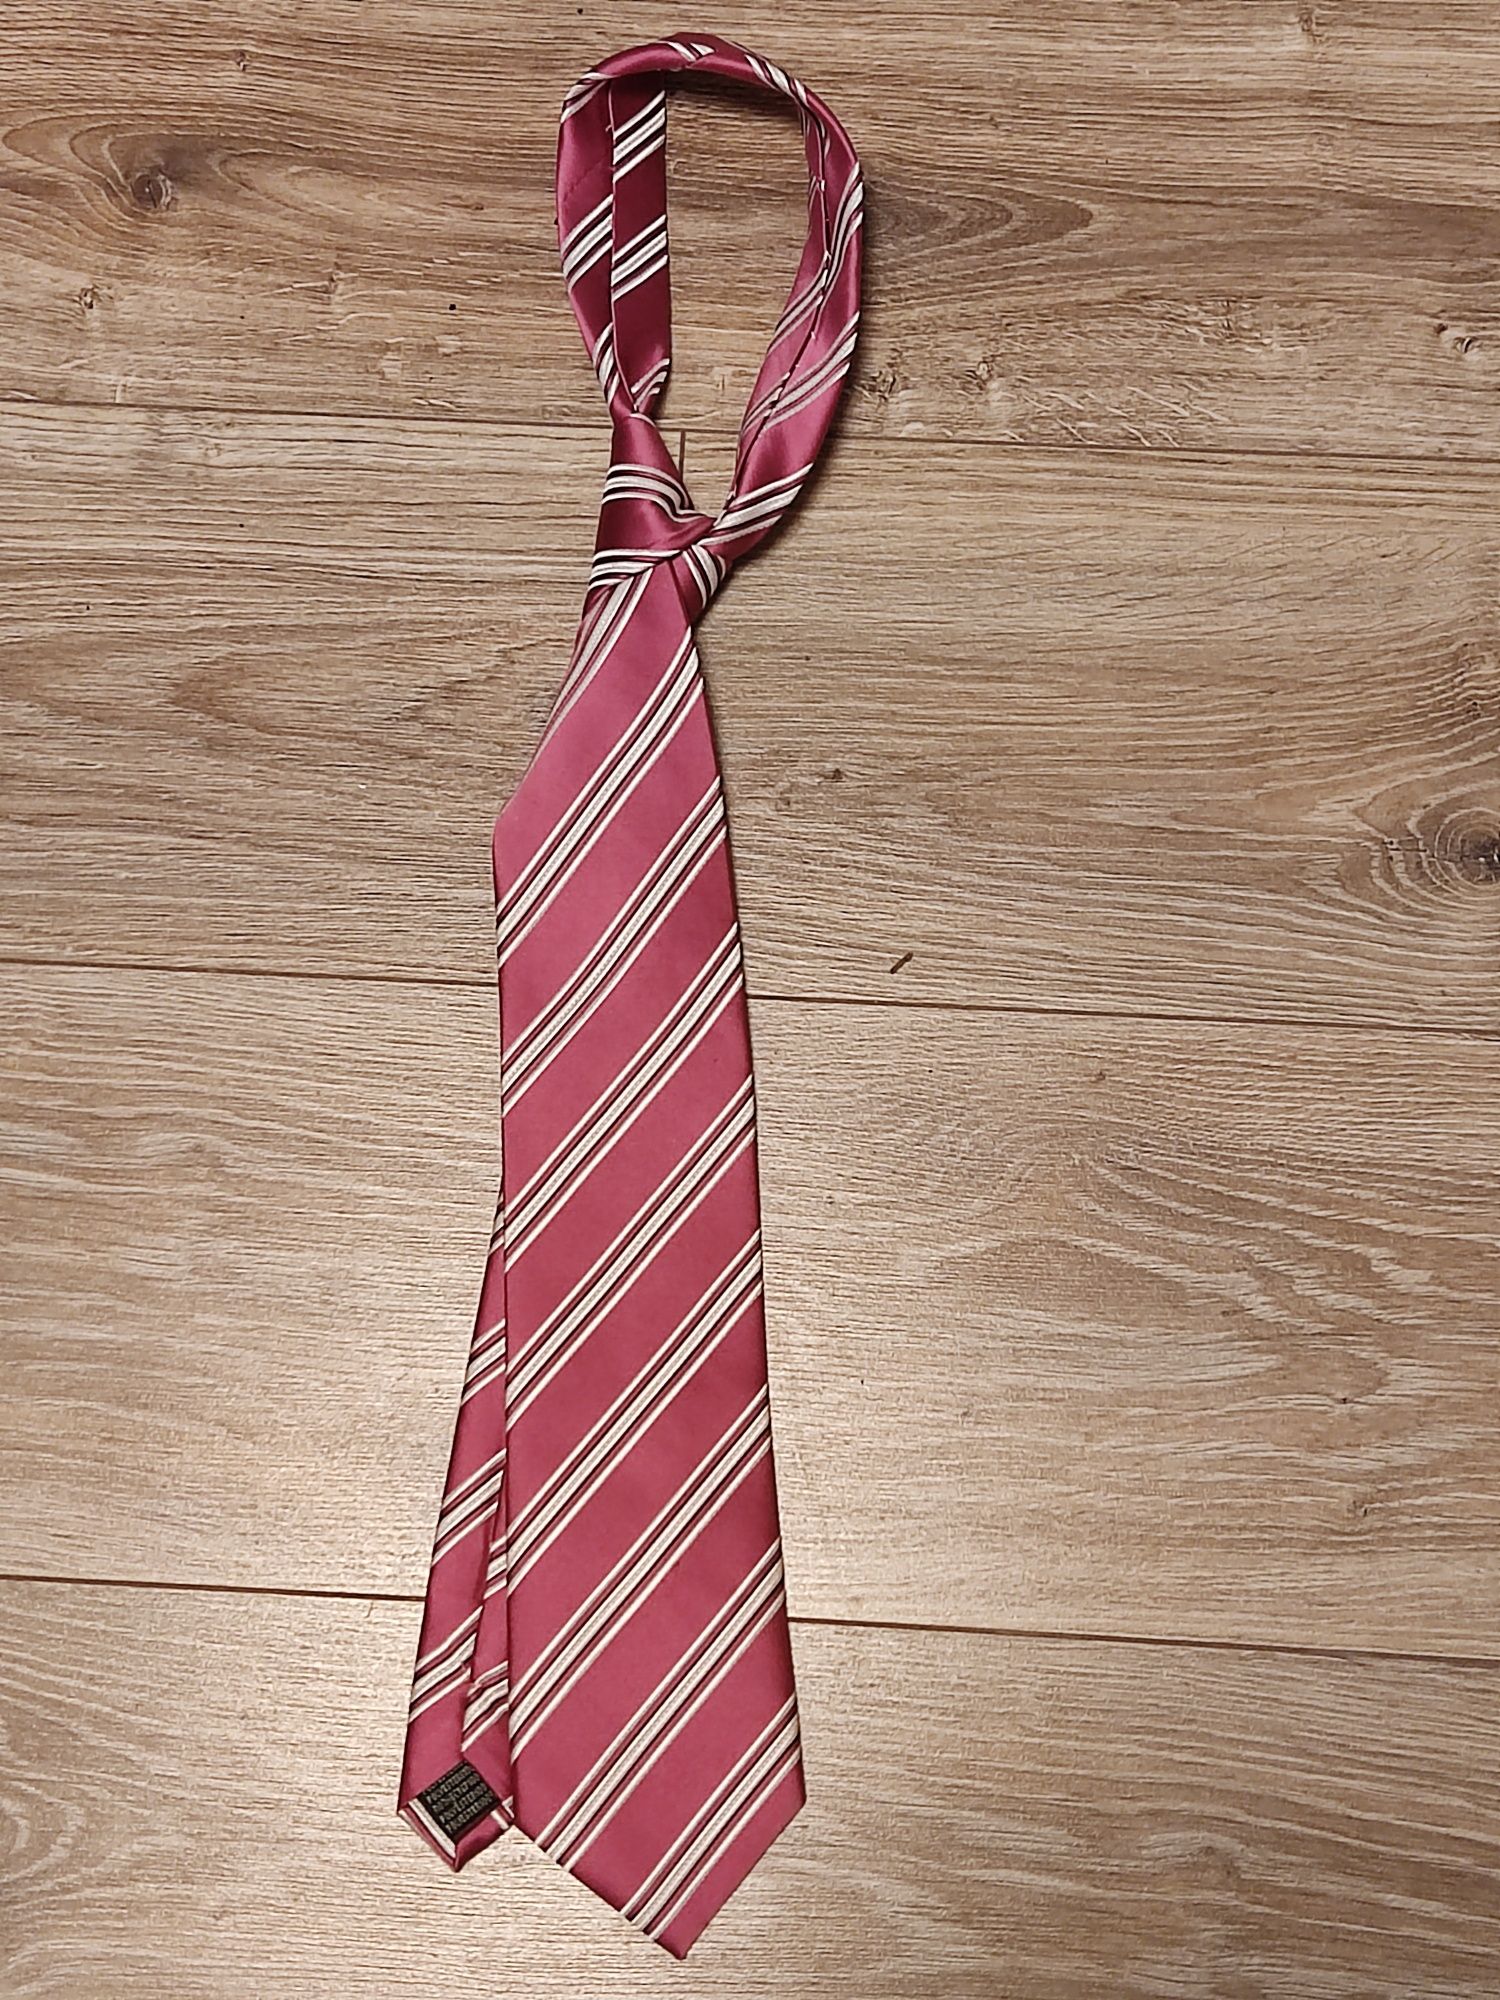 Krawat, trzy sztuki.